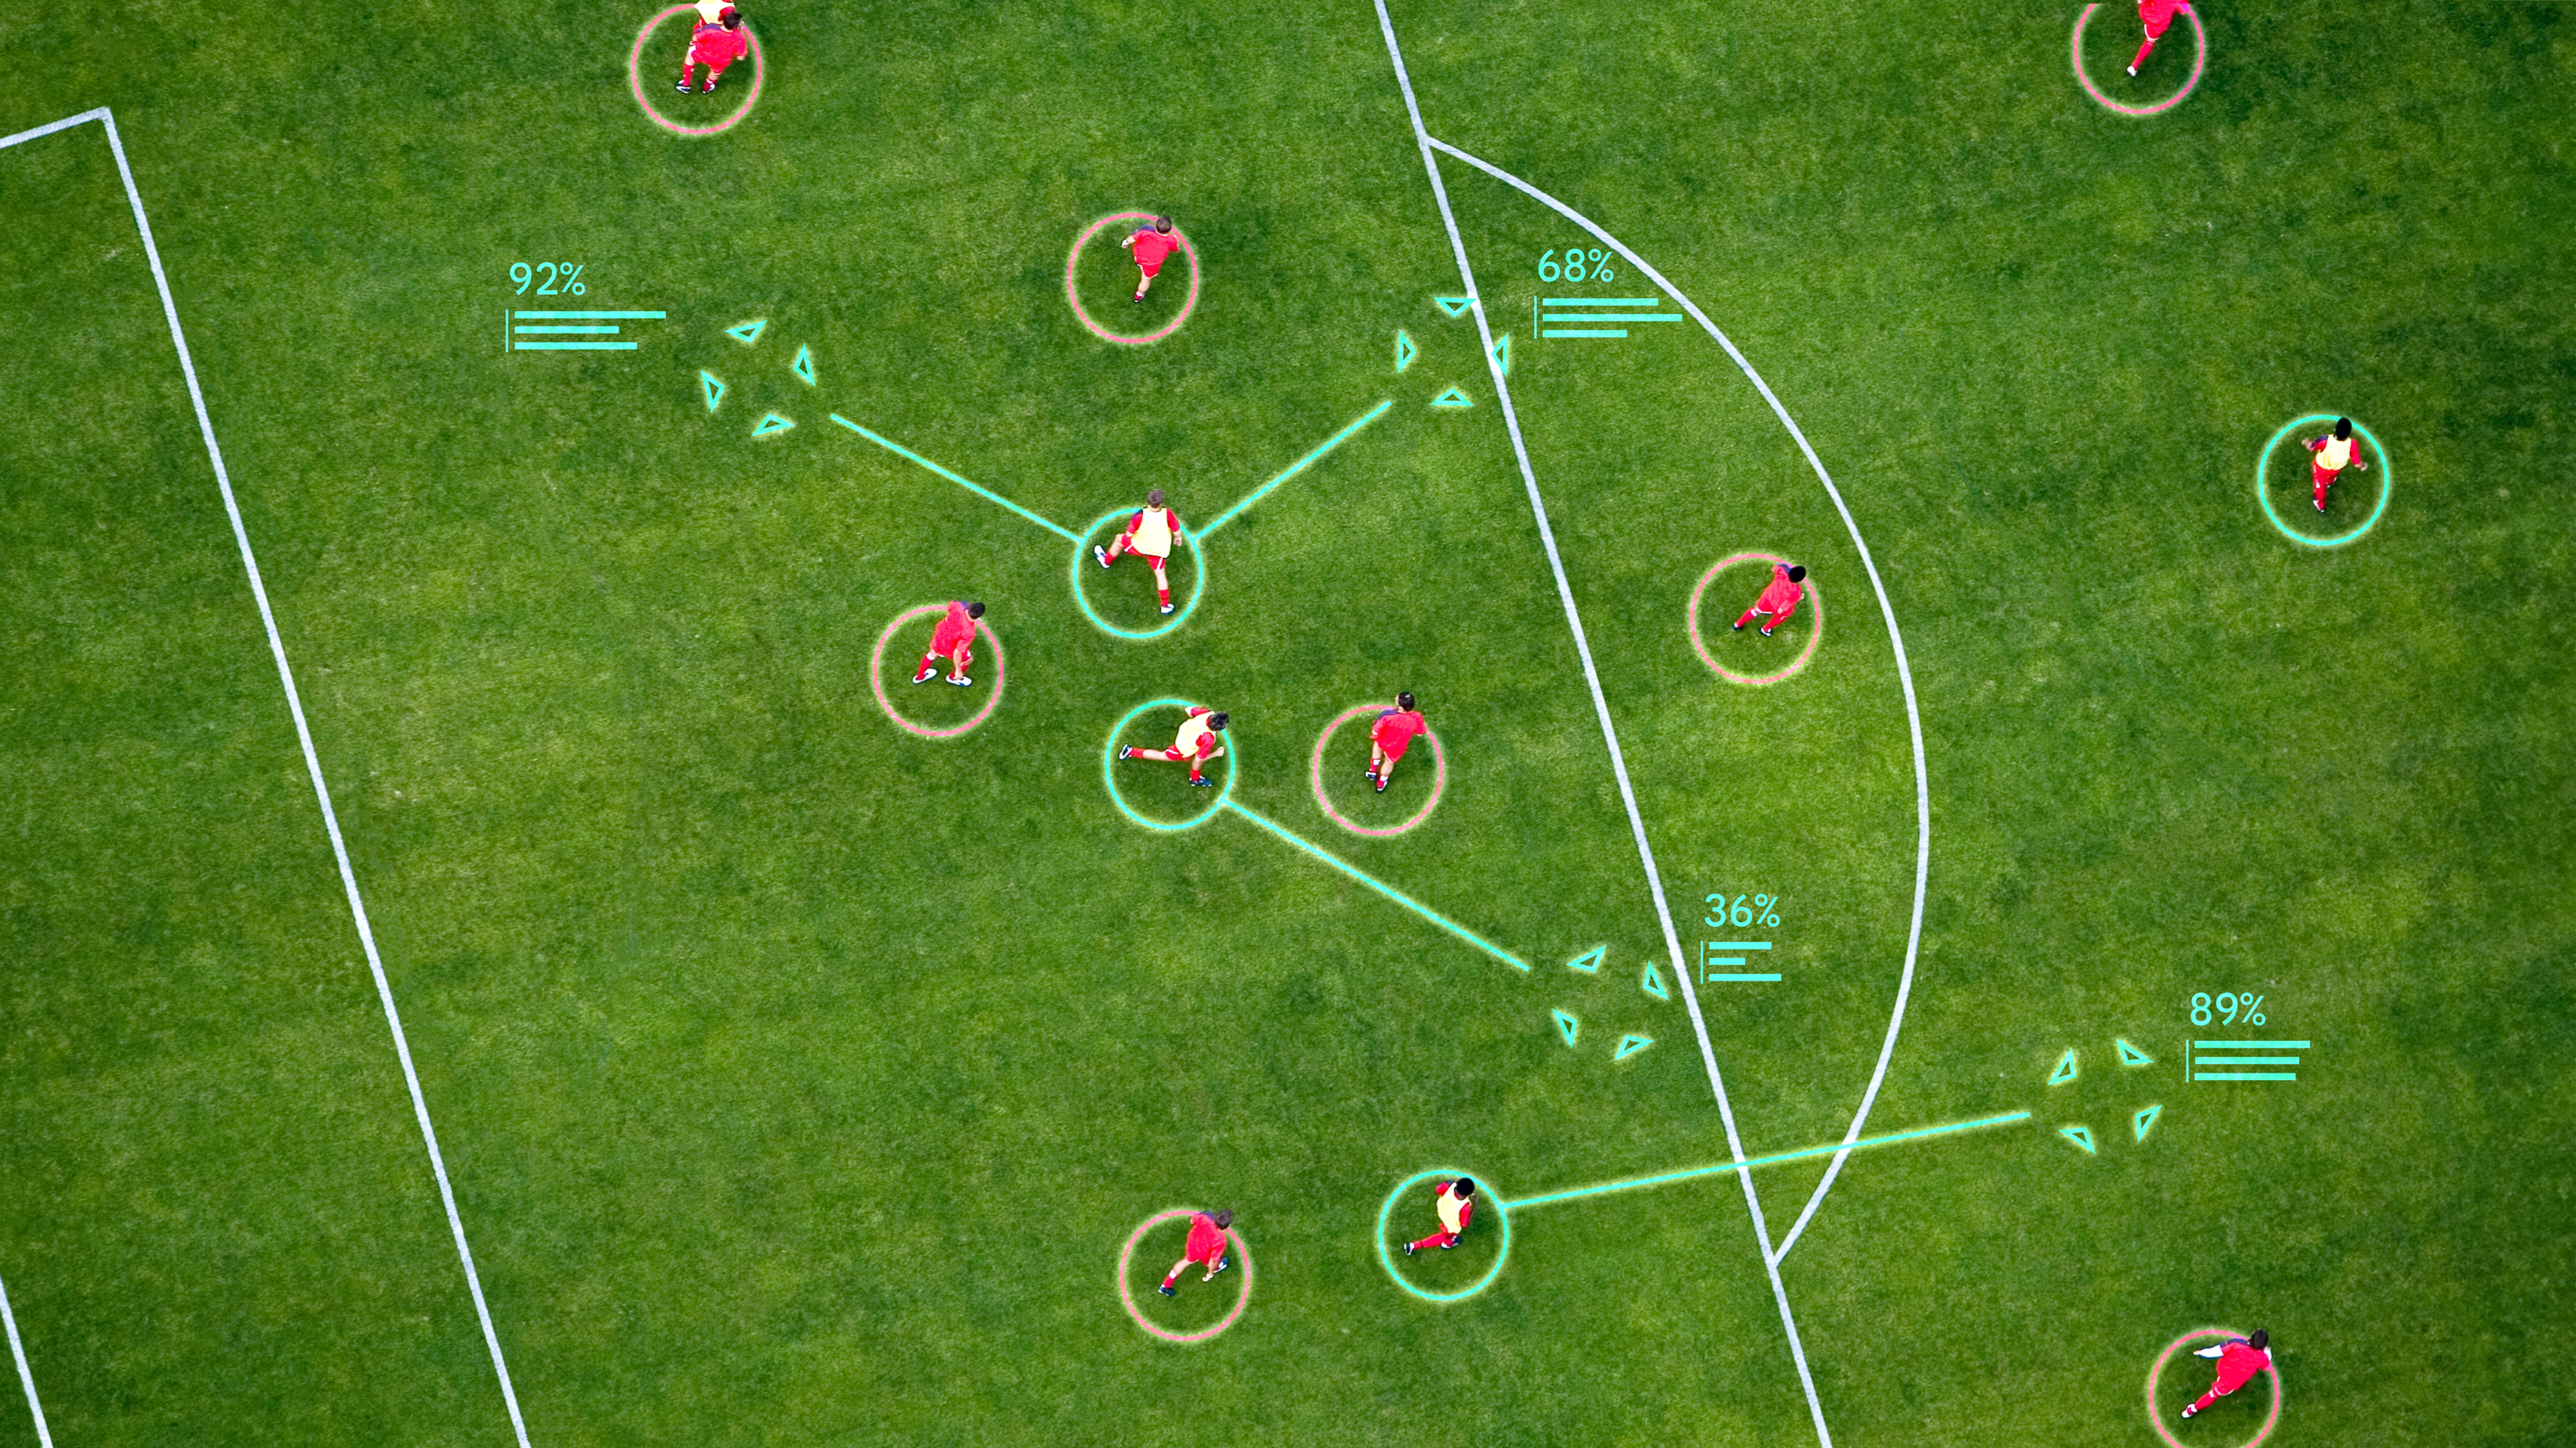 구글 딥마인드의 축구 전술 AI ‘택틱’이 코너킥 상황에서 선수의 위치와 이동 상황에 따른 득점 연결 확률을 모두 계산해 최적 전술을 제시한 시뮬레이션.   구글 딥마인드 제공